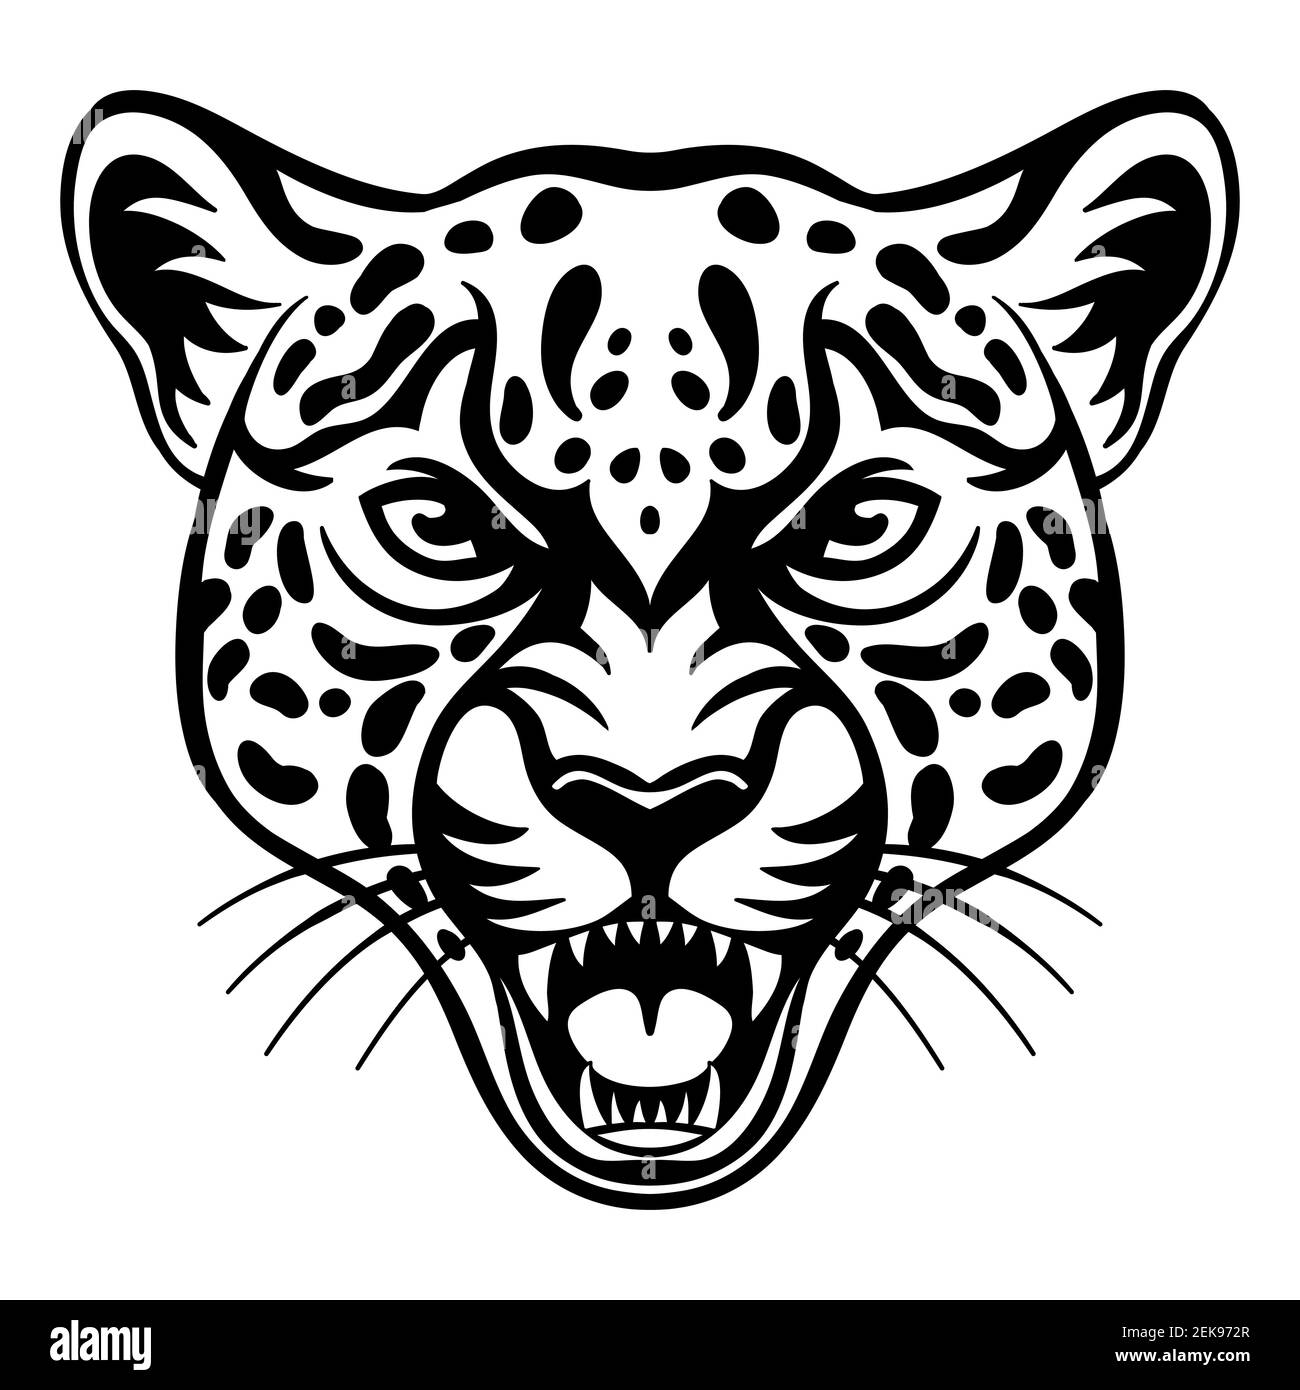 Mascot. Vektorkopf von Cougar. Schwarze Abbildung der Gefahr wilde Katze isoliert auf weißem Hintergrund. Für Dekoration, Druck, Design, Logo, Sportvereine, t Stock Vektor